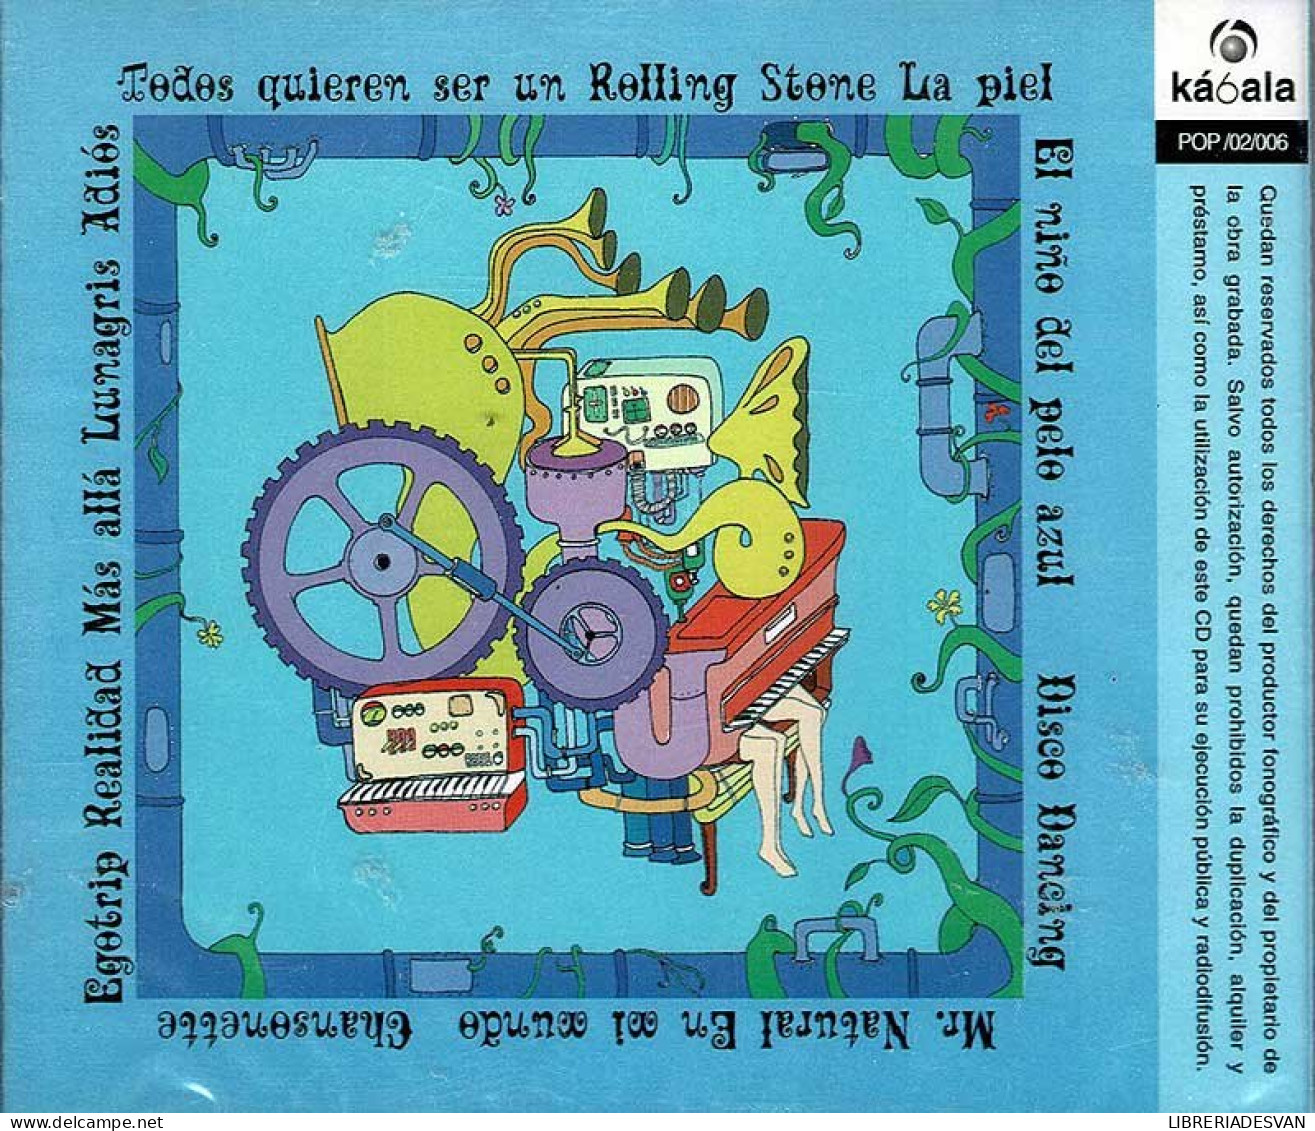 Harry Octopus - Rock'n'Roll Karma. CD - Disco, Pop